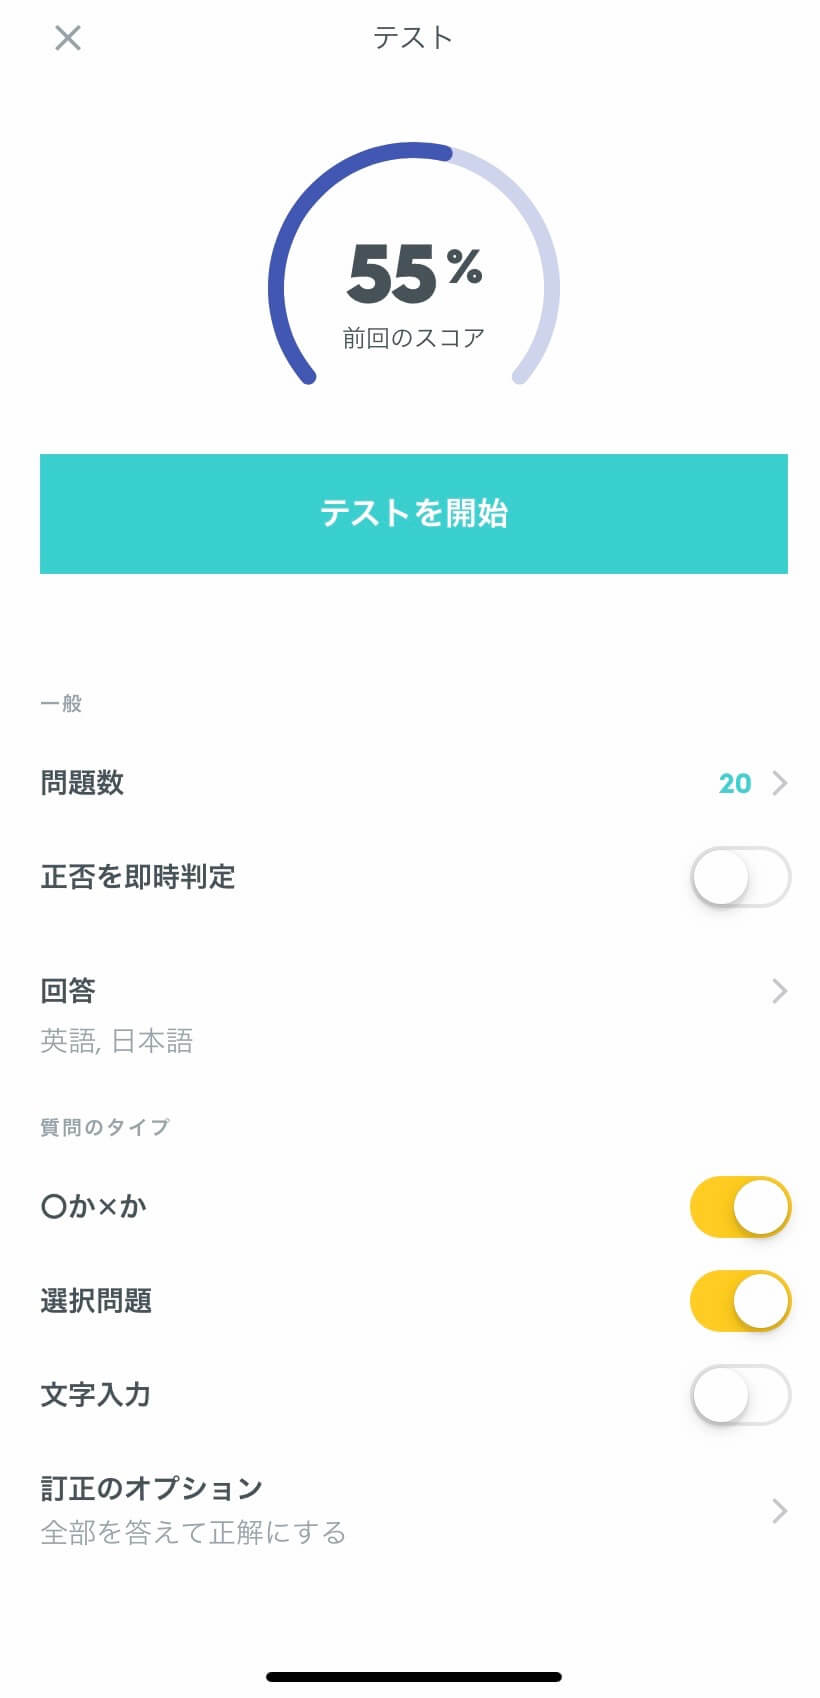 英単語などの暗記にオススメのアプリ Quizlet クイズレット をご紹介します Home個別指導塾 神奈川県藤沢市村岡の 第二の家